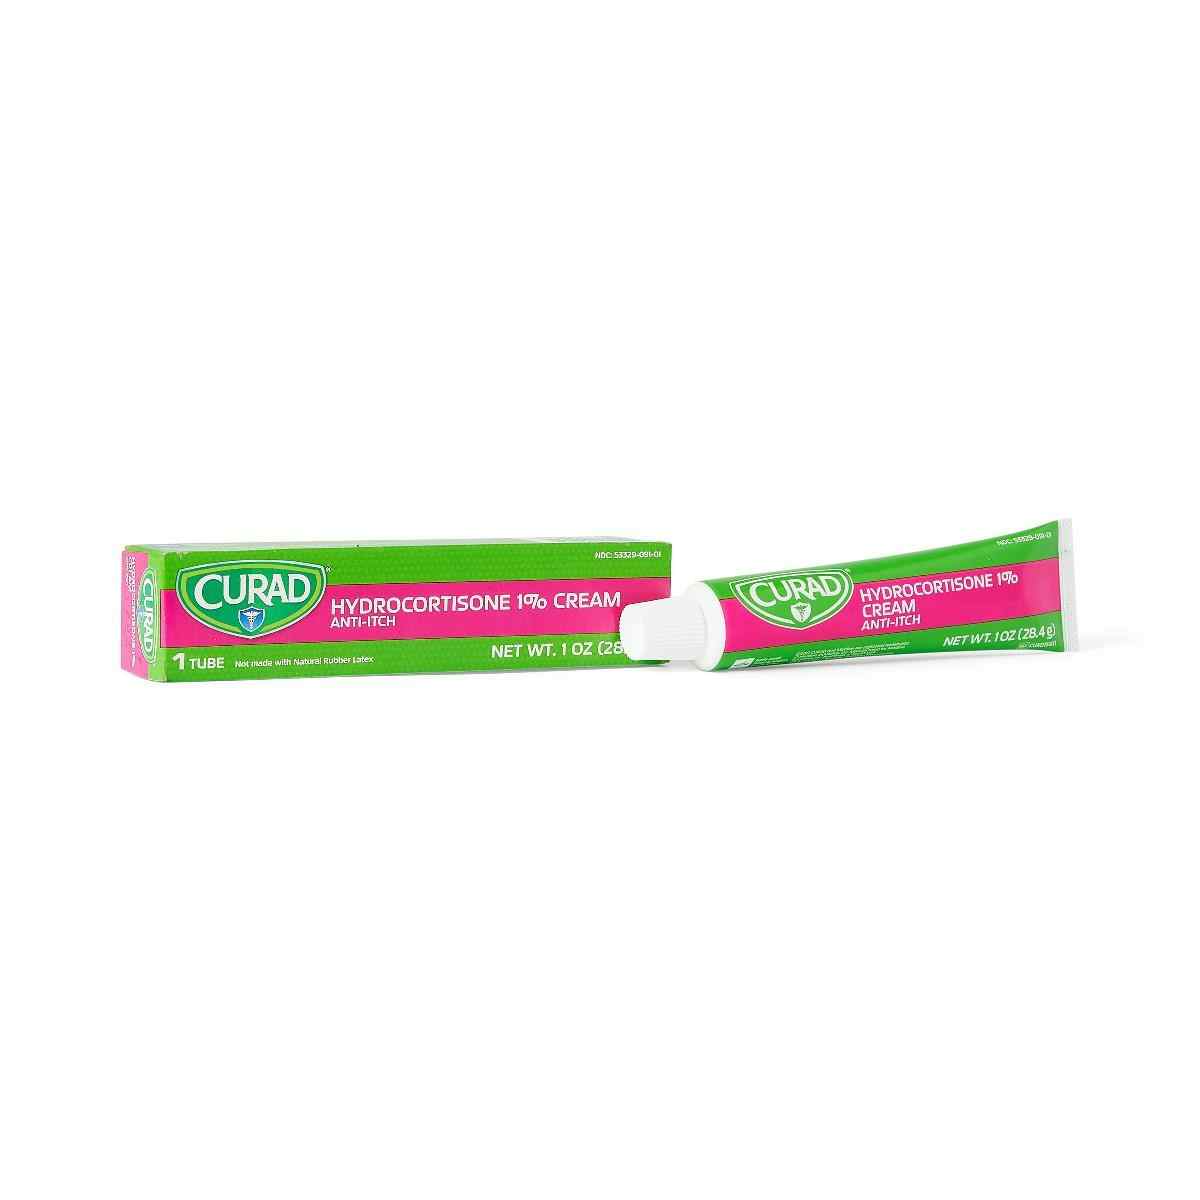 Curad Hydrocortisone Anti-Itch Cream, 1%, CUR015431H, 1 oz. - 1 Each